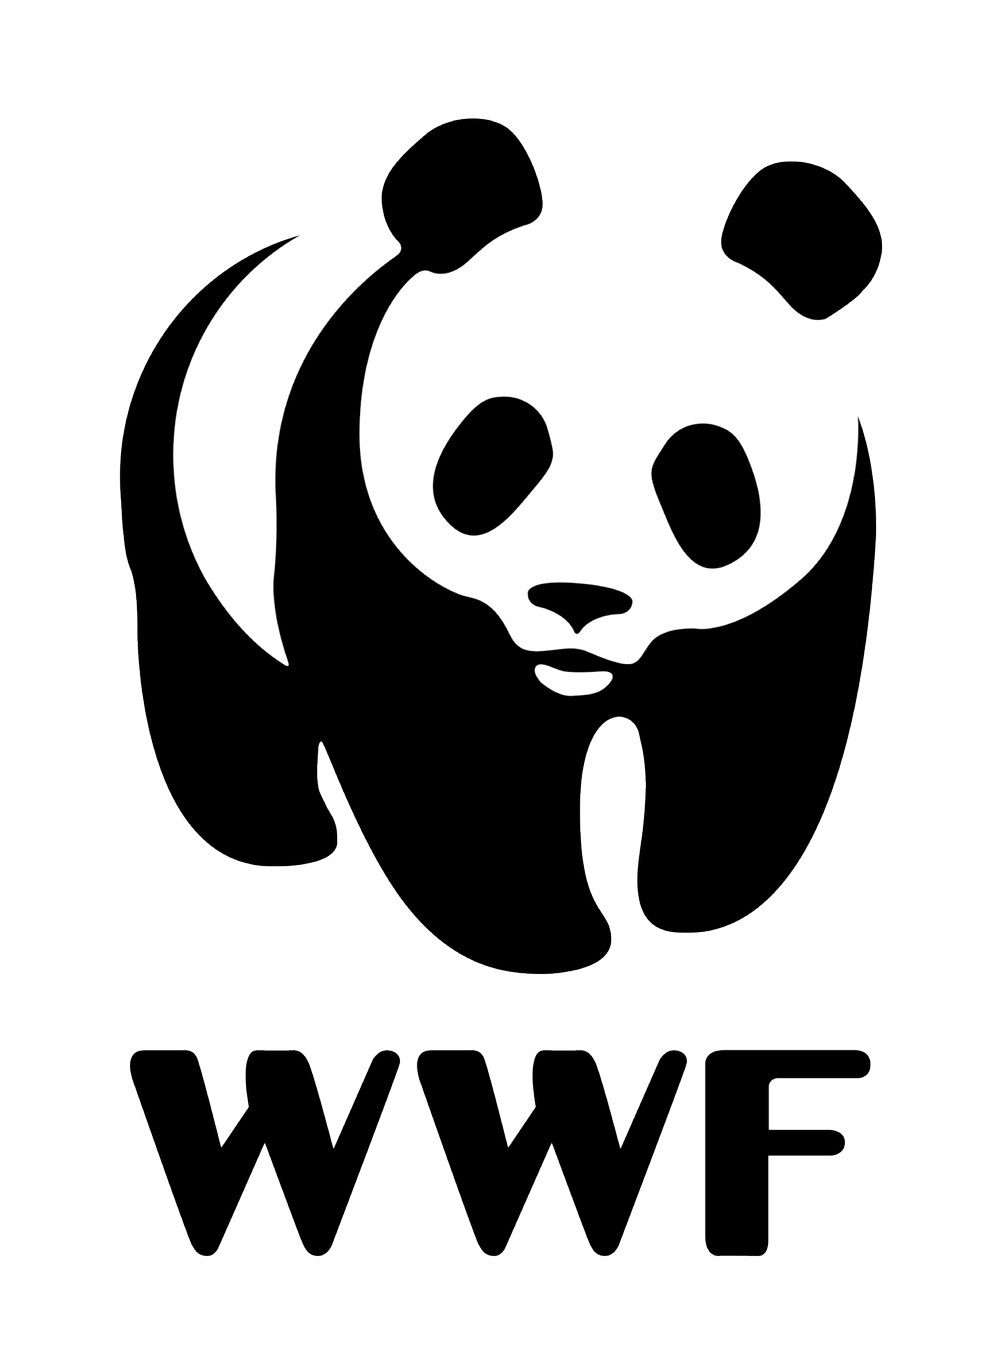 WWF_logo.png